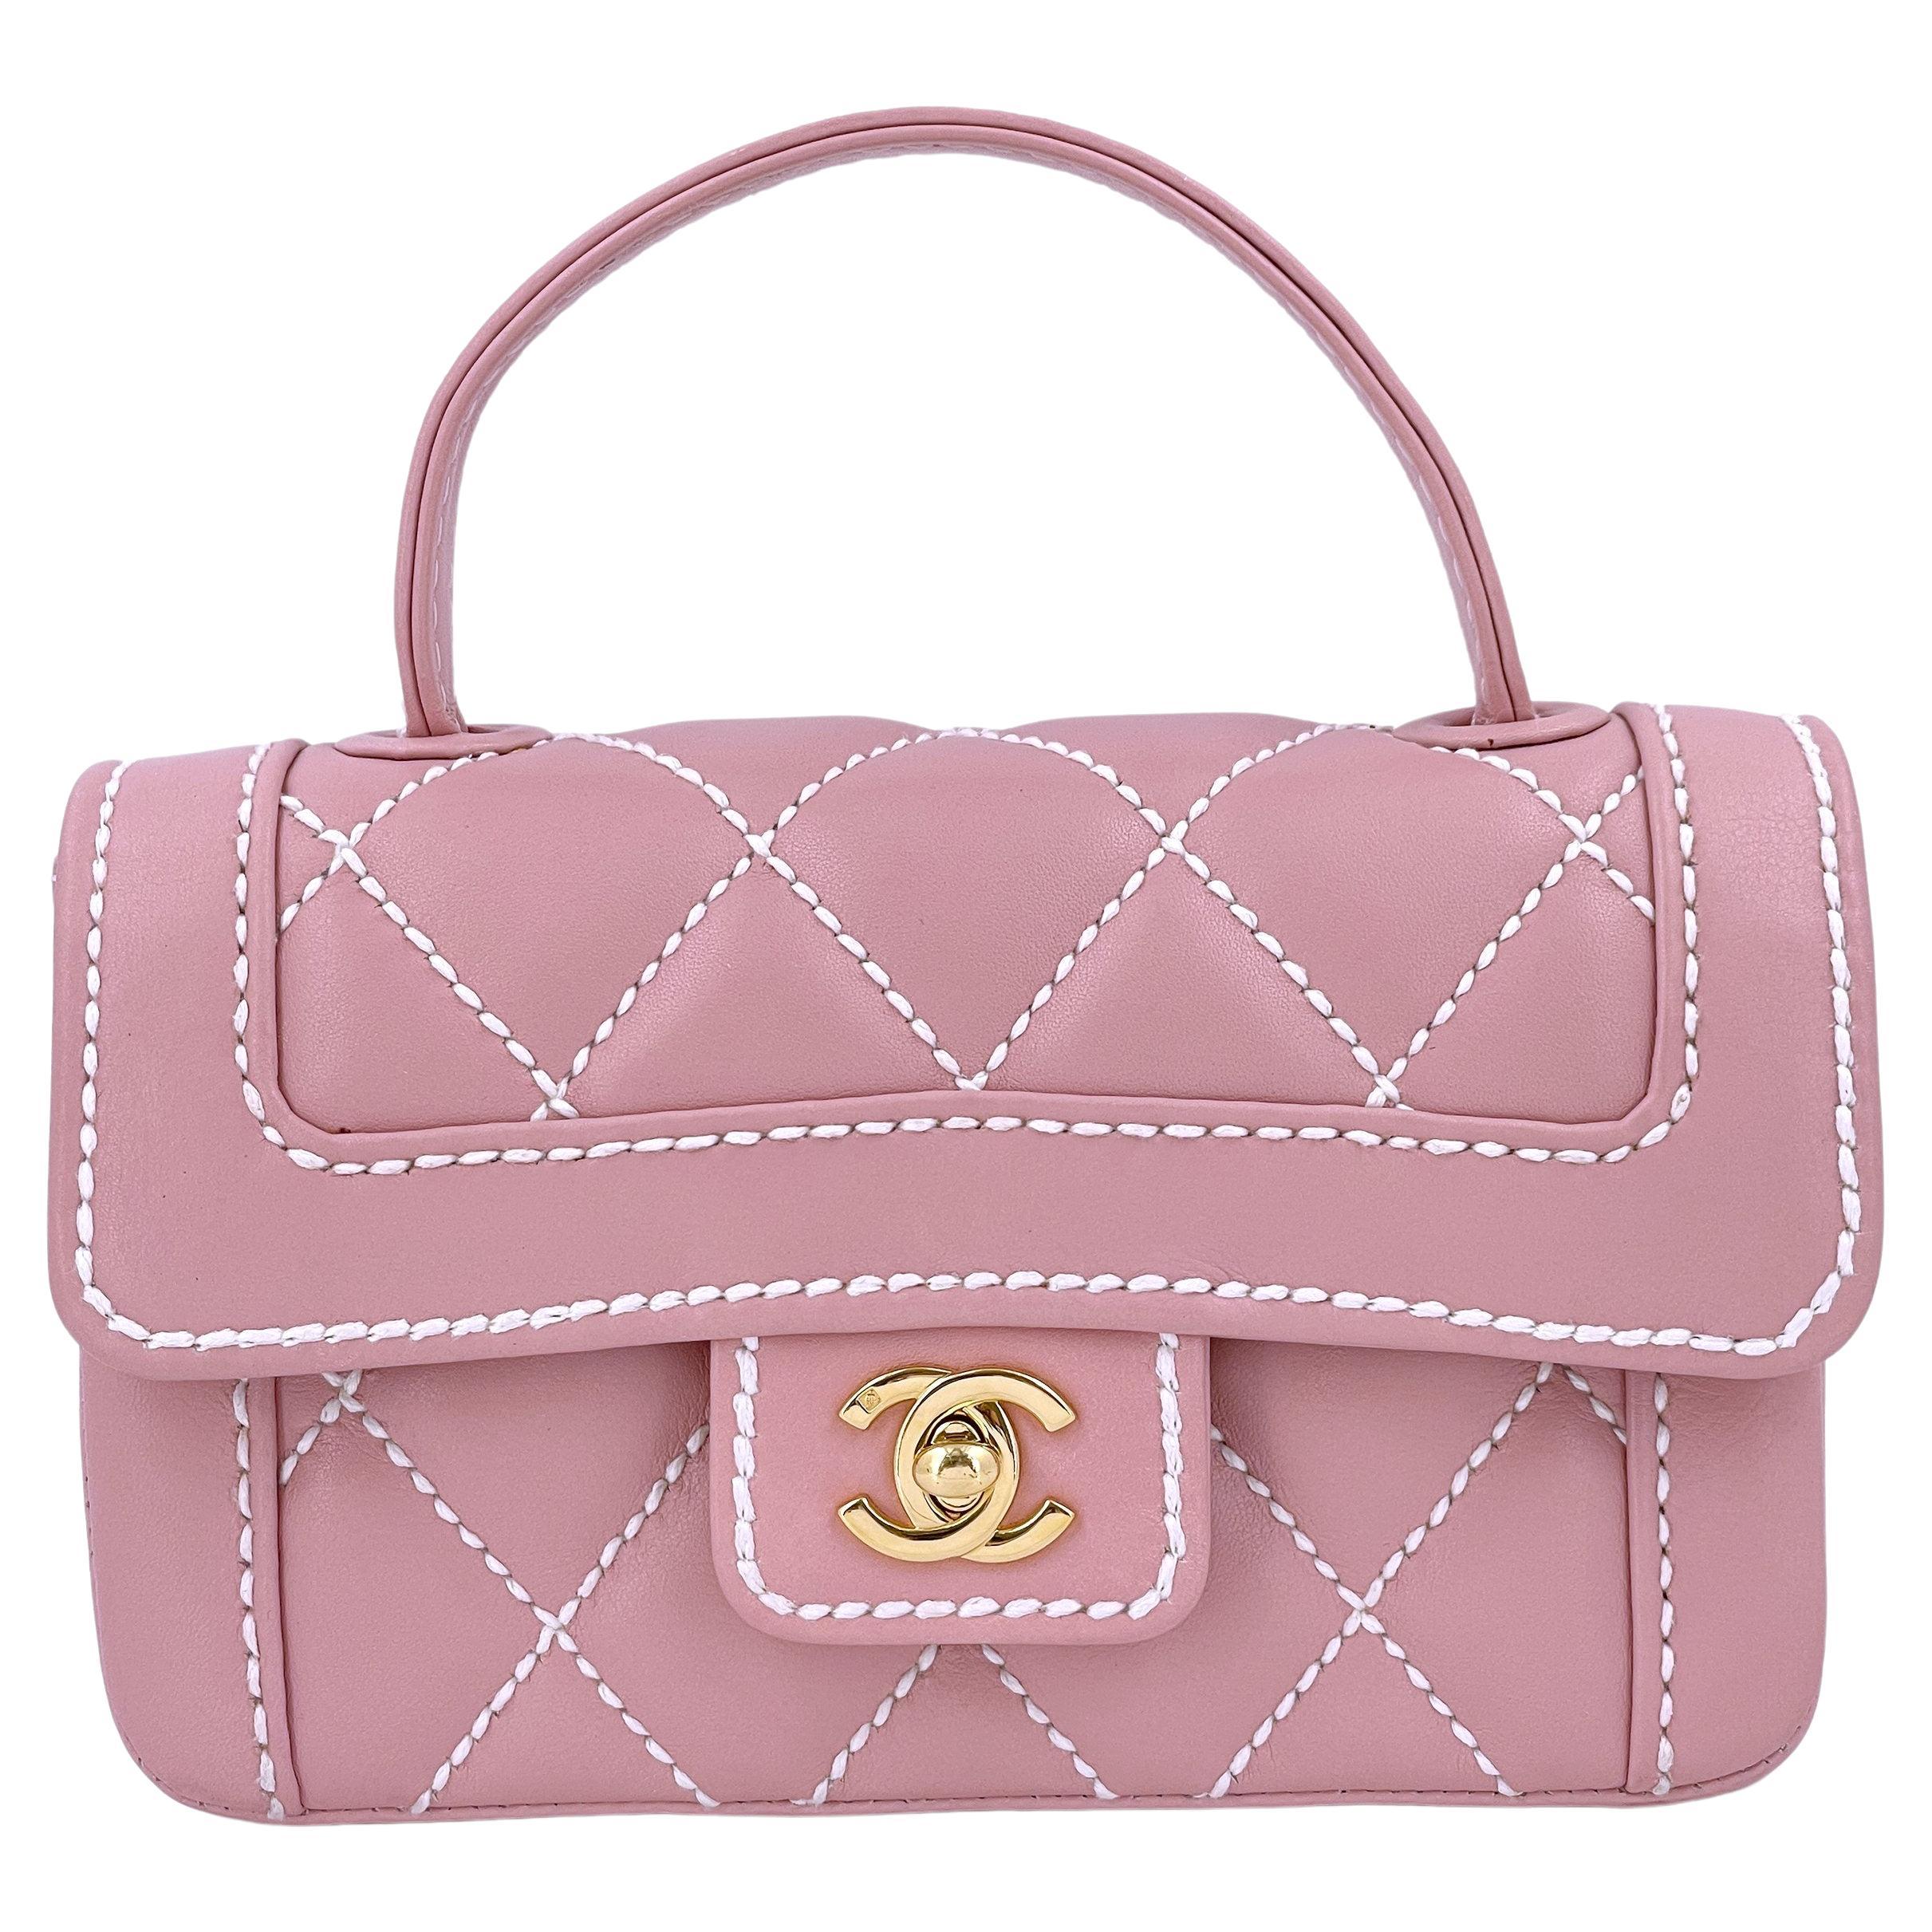 Rare Chanel Mauve Pink Wild Stitch Surpique Baby Flap Bag 66463